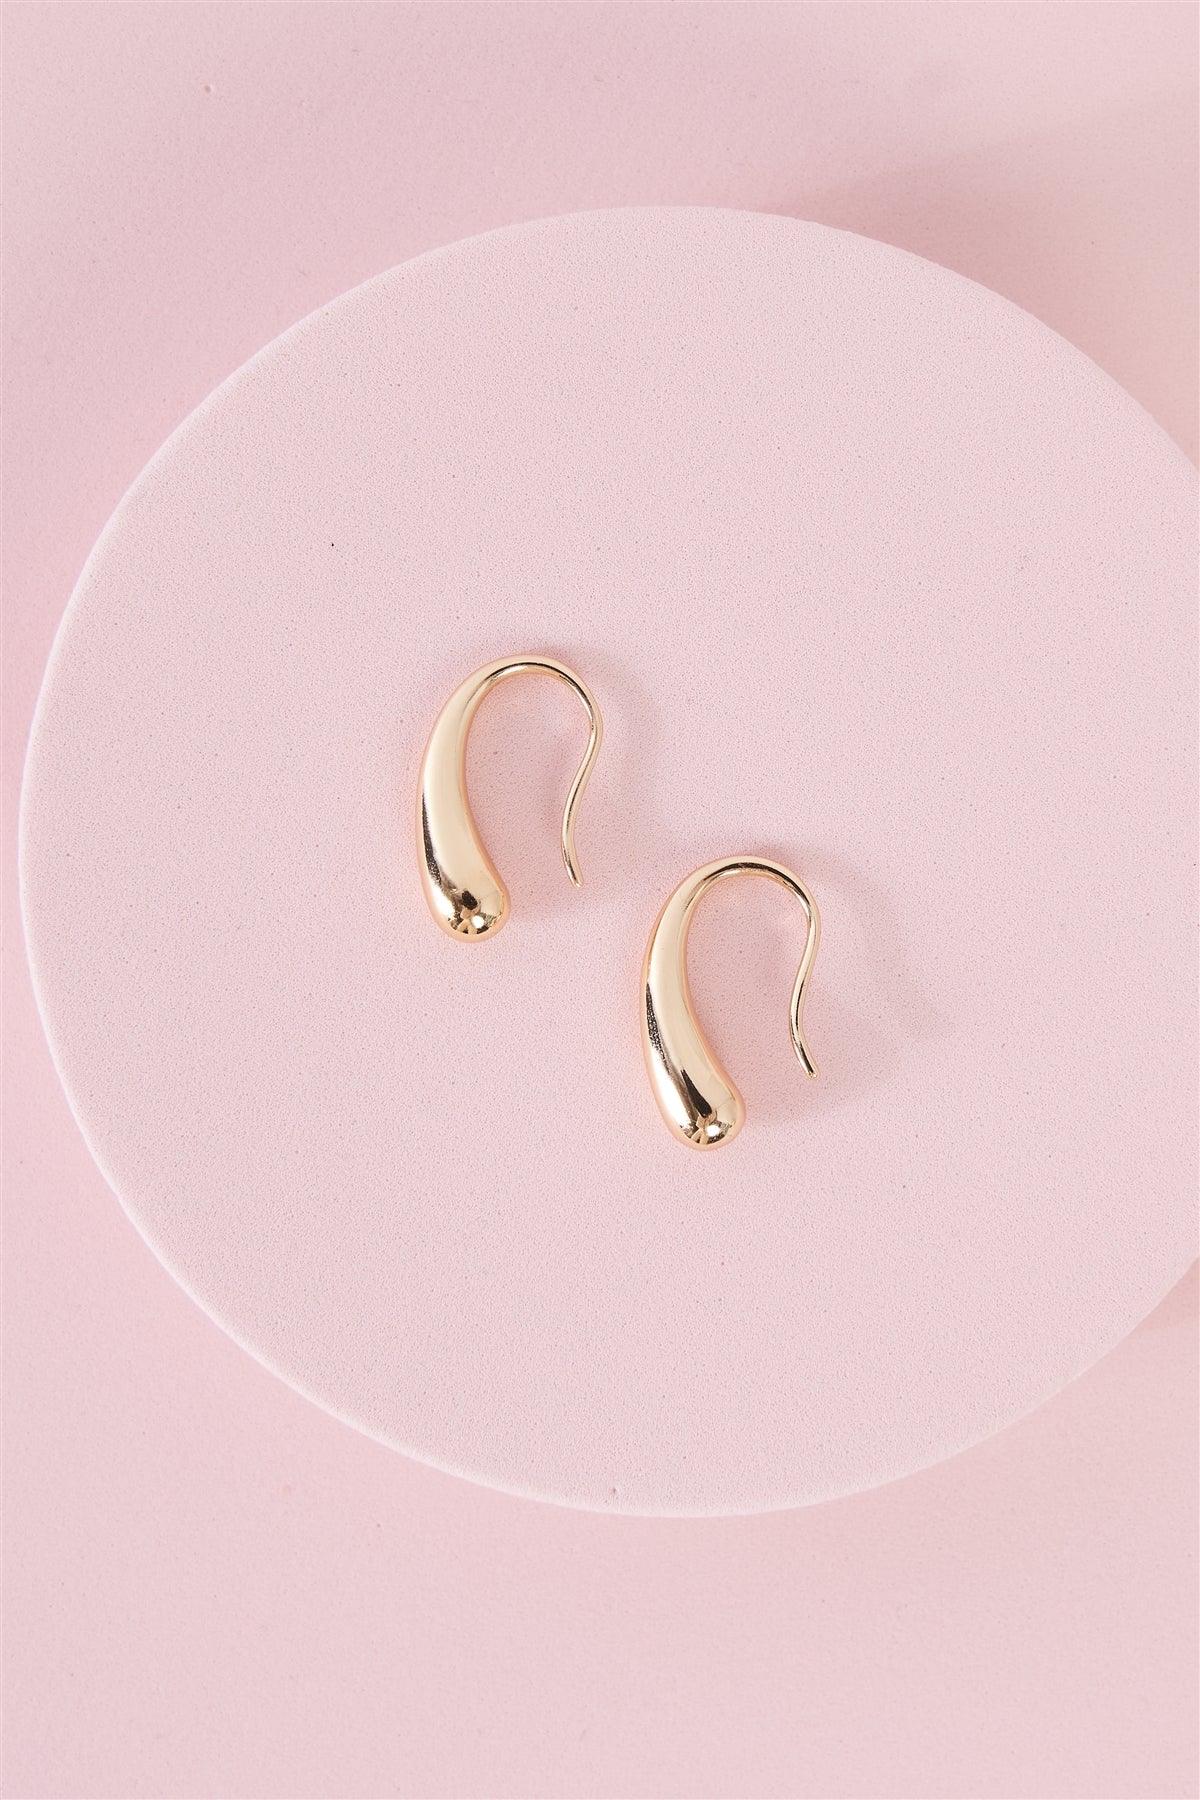 "Teardrop" Gold Fishhook Earrings /3 Pairs